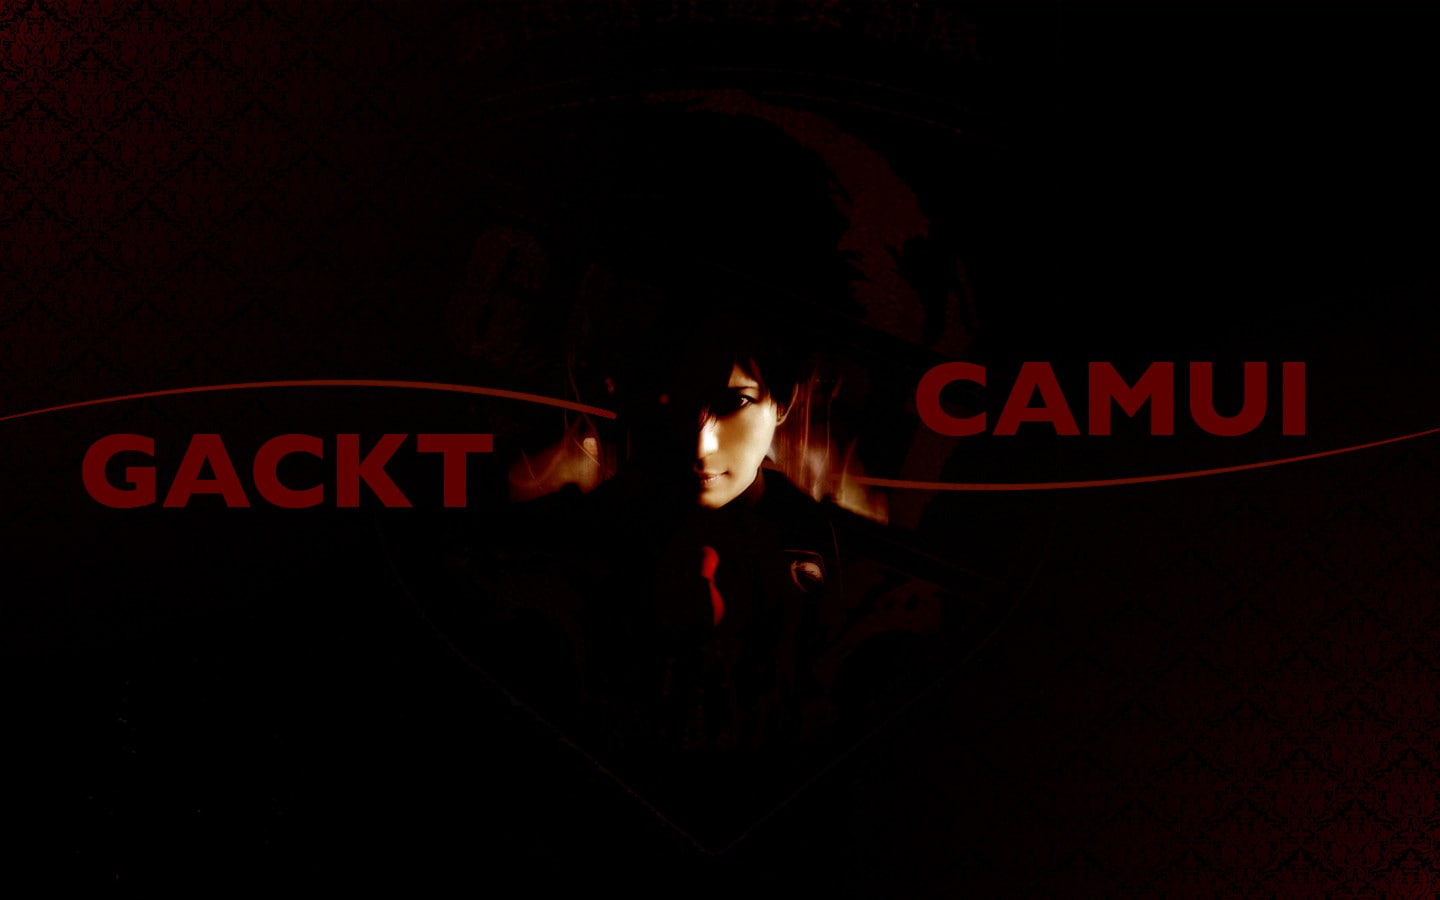 Gackt (musician)